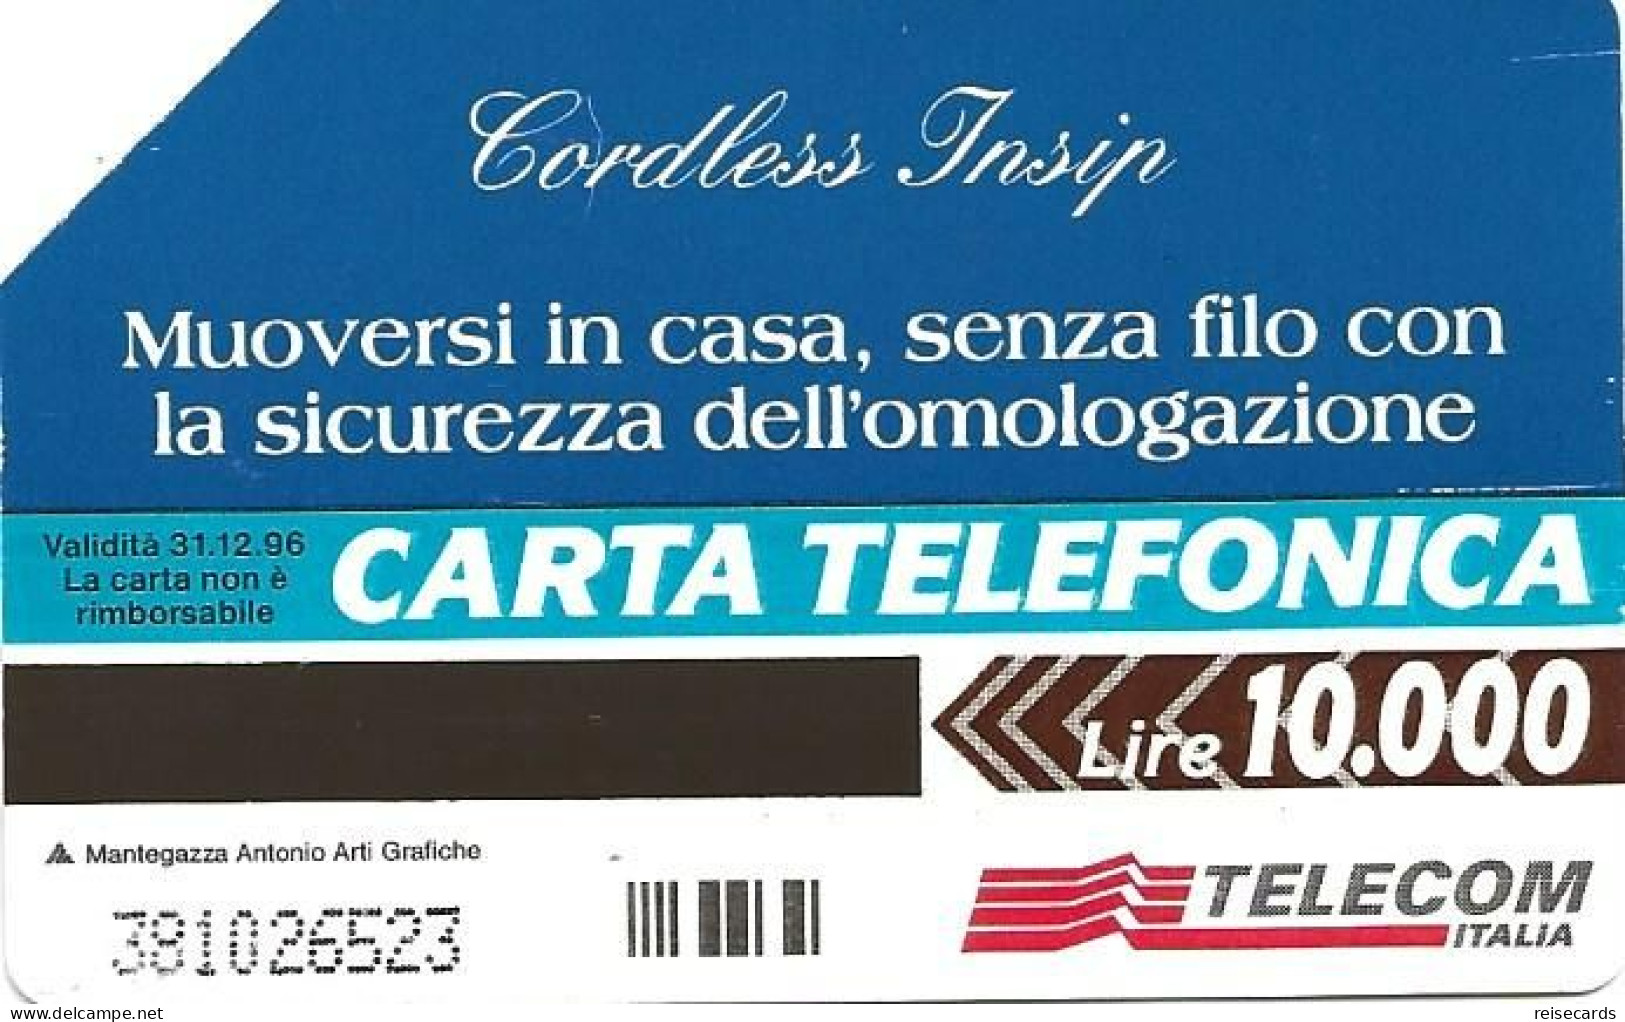 Italy: Telecom Italia - Cordless Insip - Pubbliche Pubblicitarie